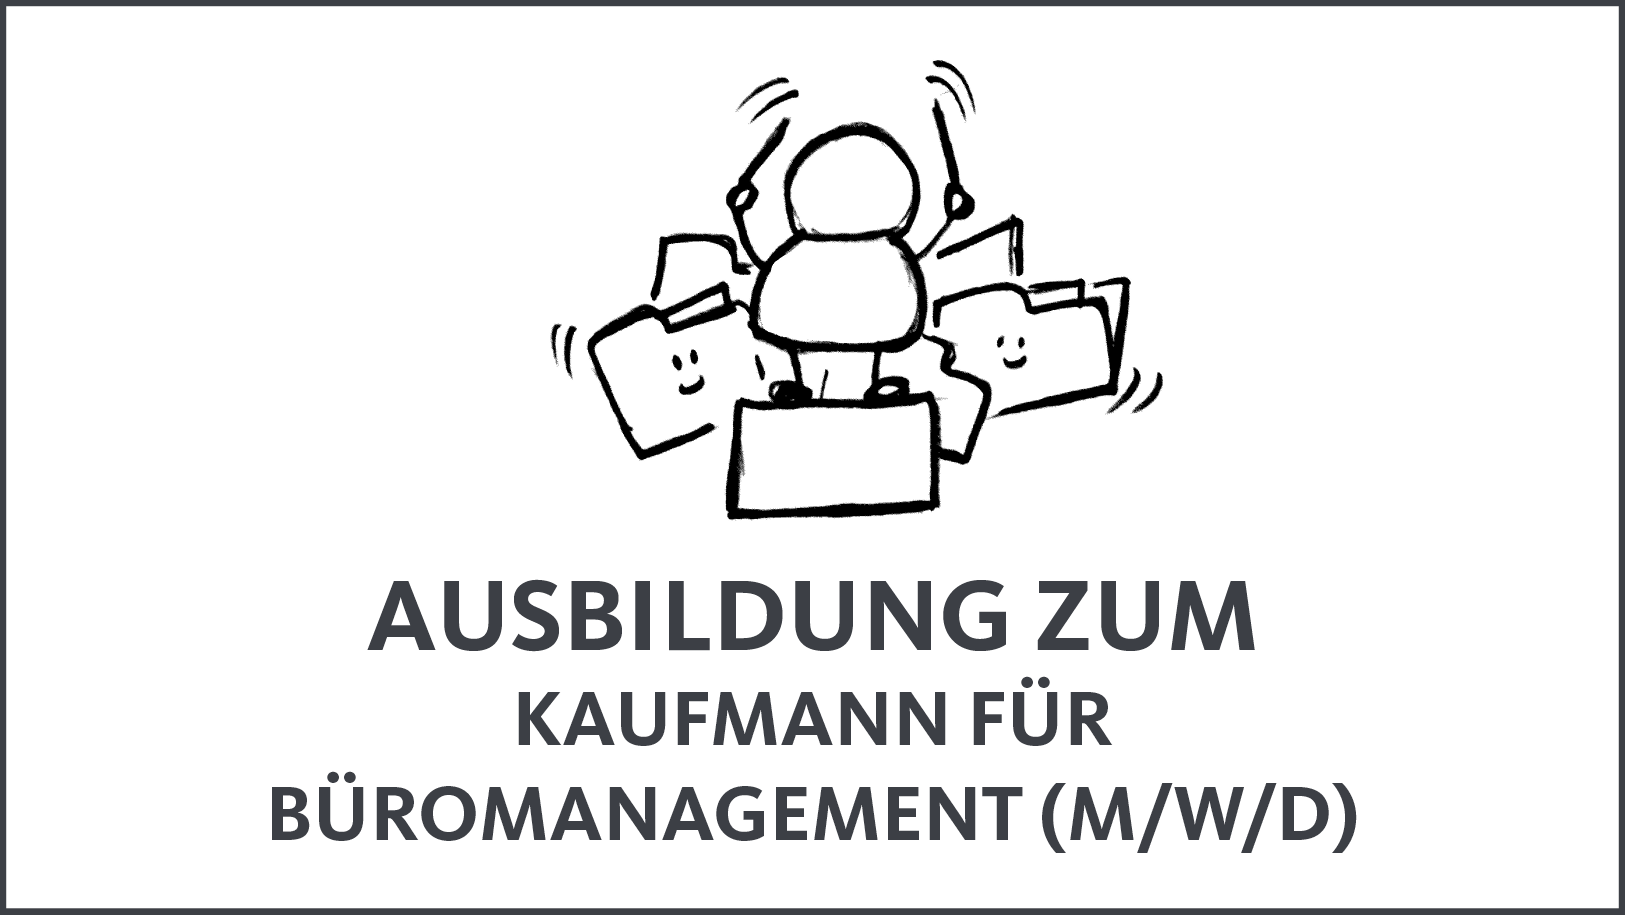 Union Betriebs-GmbH, Stellenausschreibung, Jobs, Kaufmann für Büromangement (M/W/D)